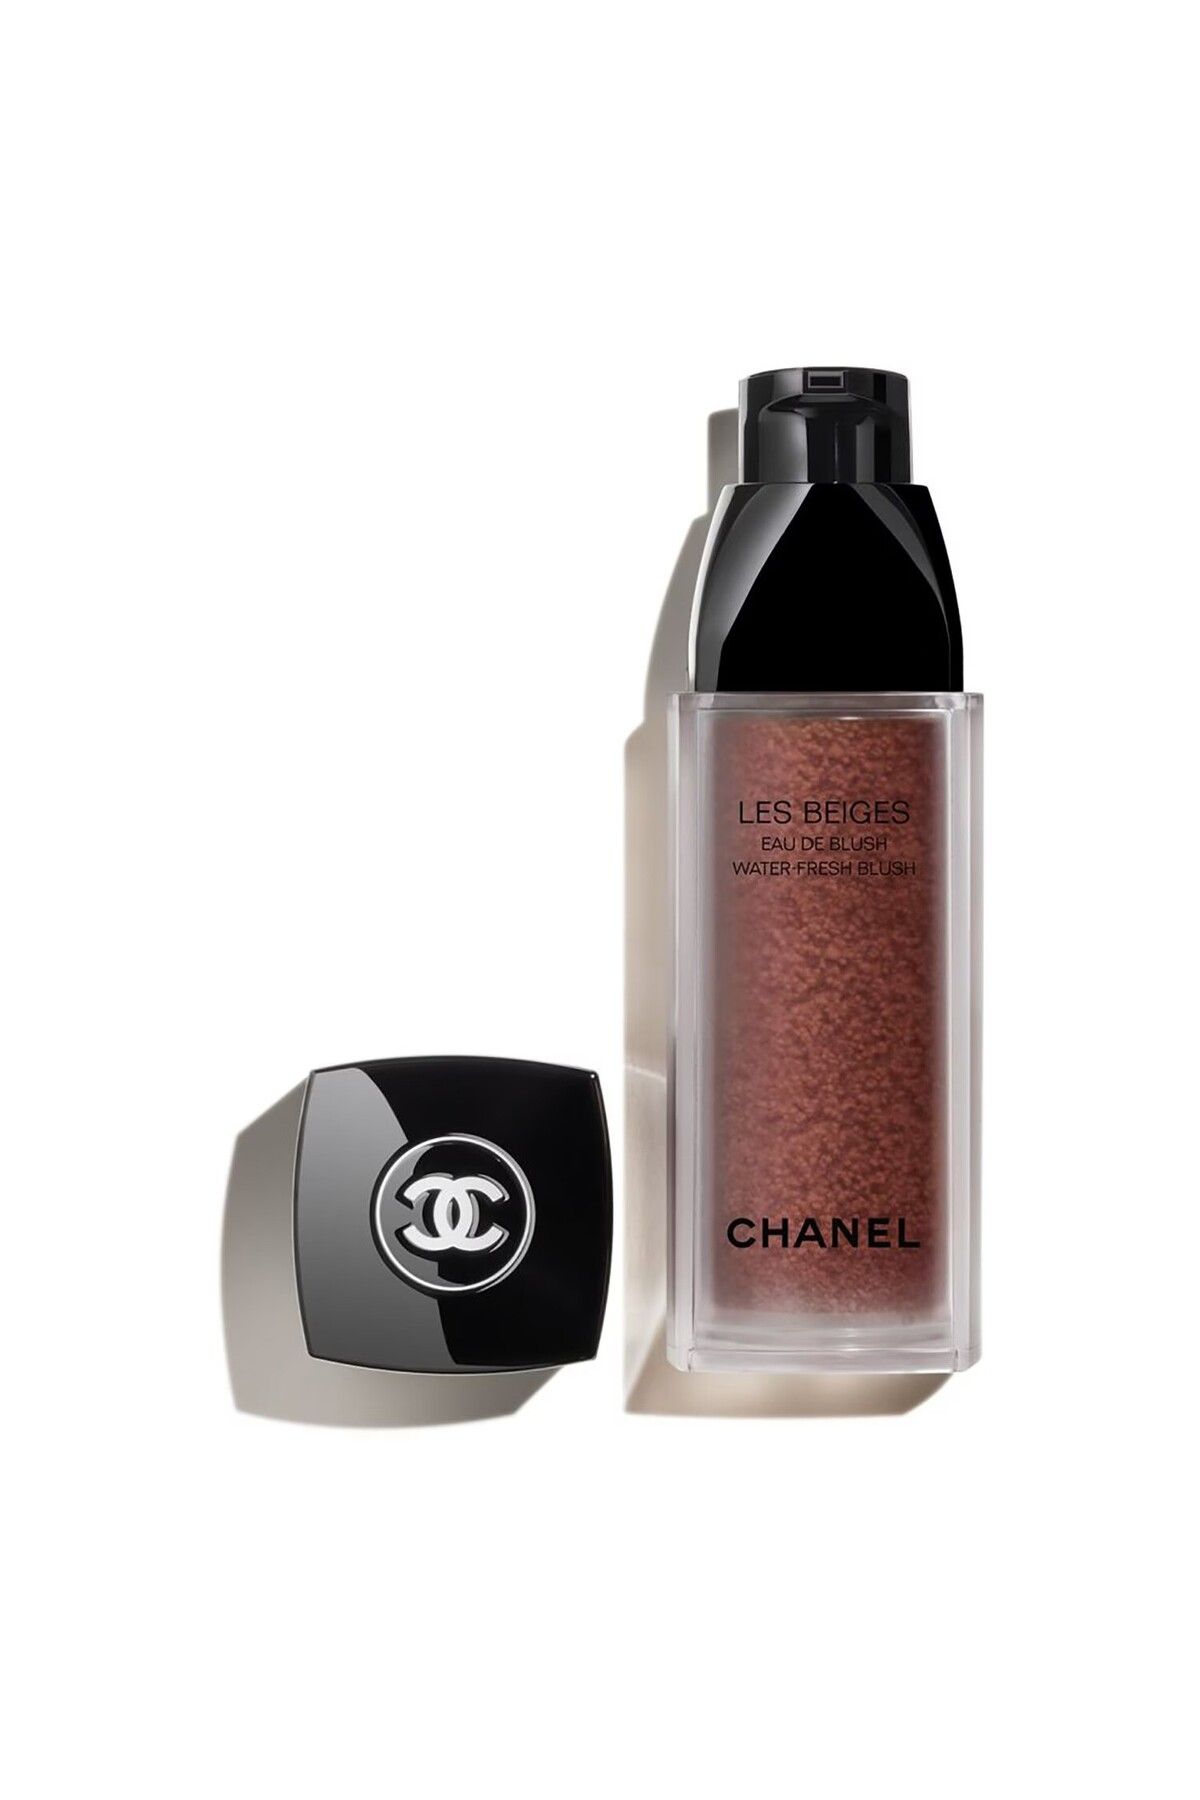 Chanel LES BEIGES - 8 Saat Kalıcı, Ultra Hafif Nemlendiricili, Mikro Damlacıklı, Su Bazlı Likit Allık 15 ml